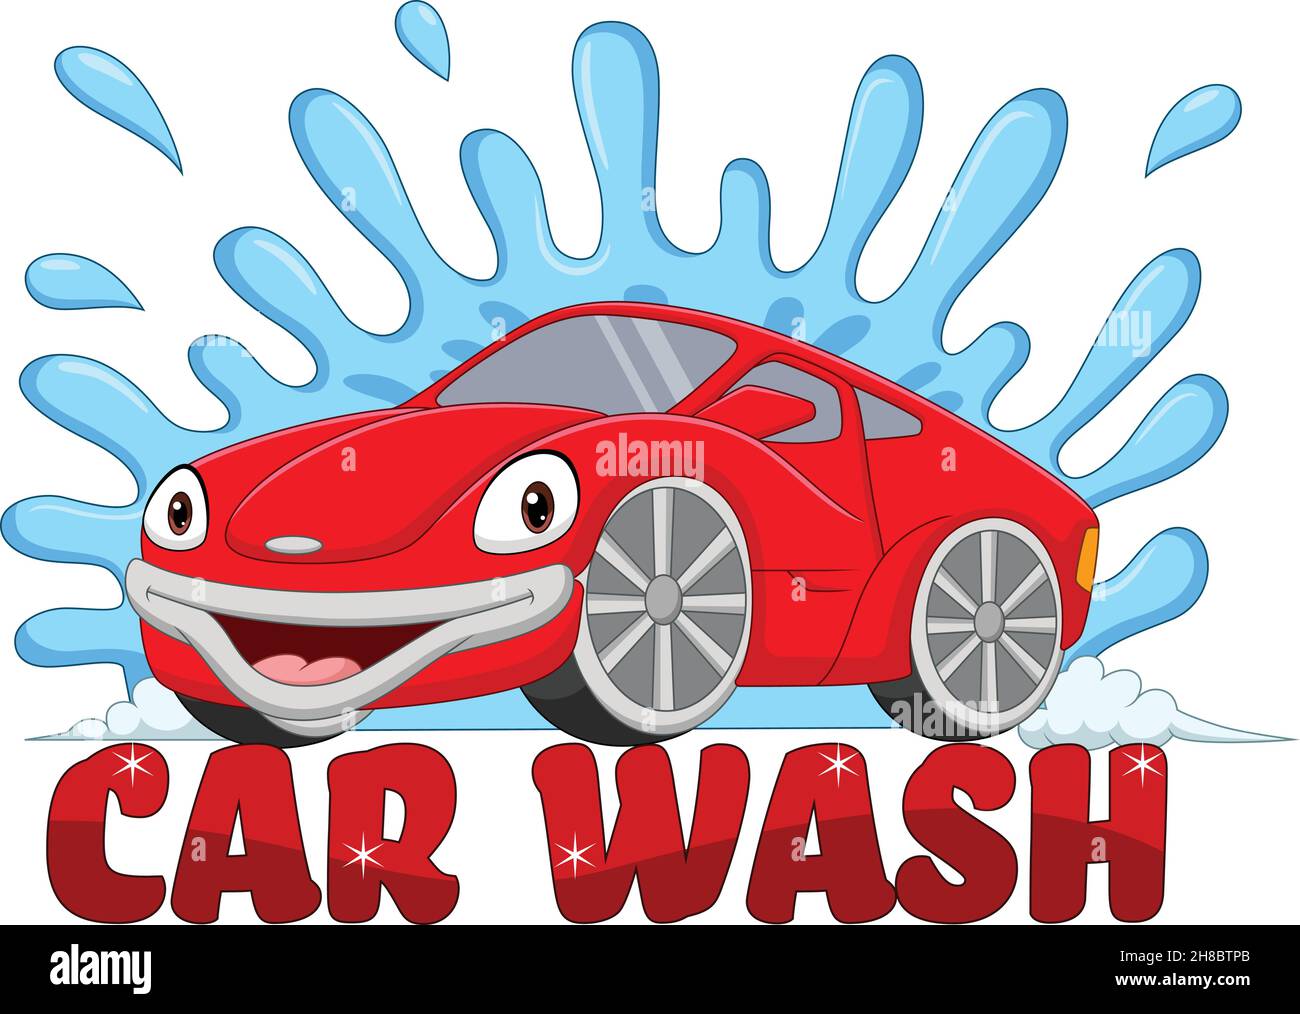 Cartoon smiling car washing mascot Stock Vector